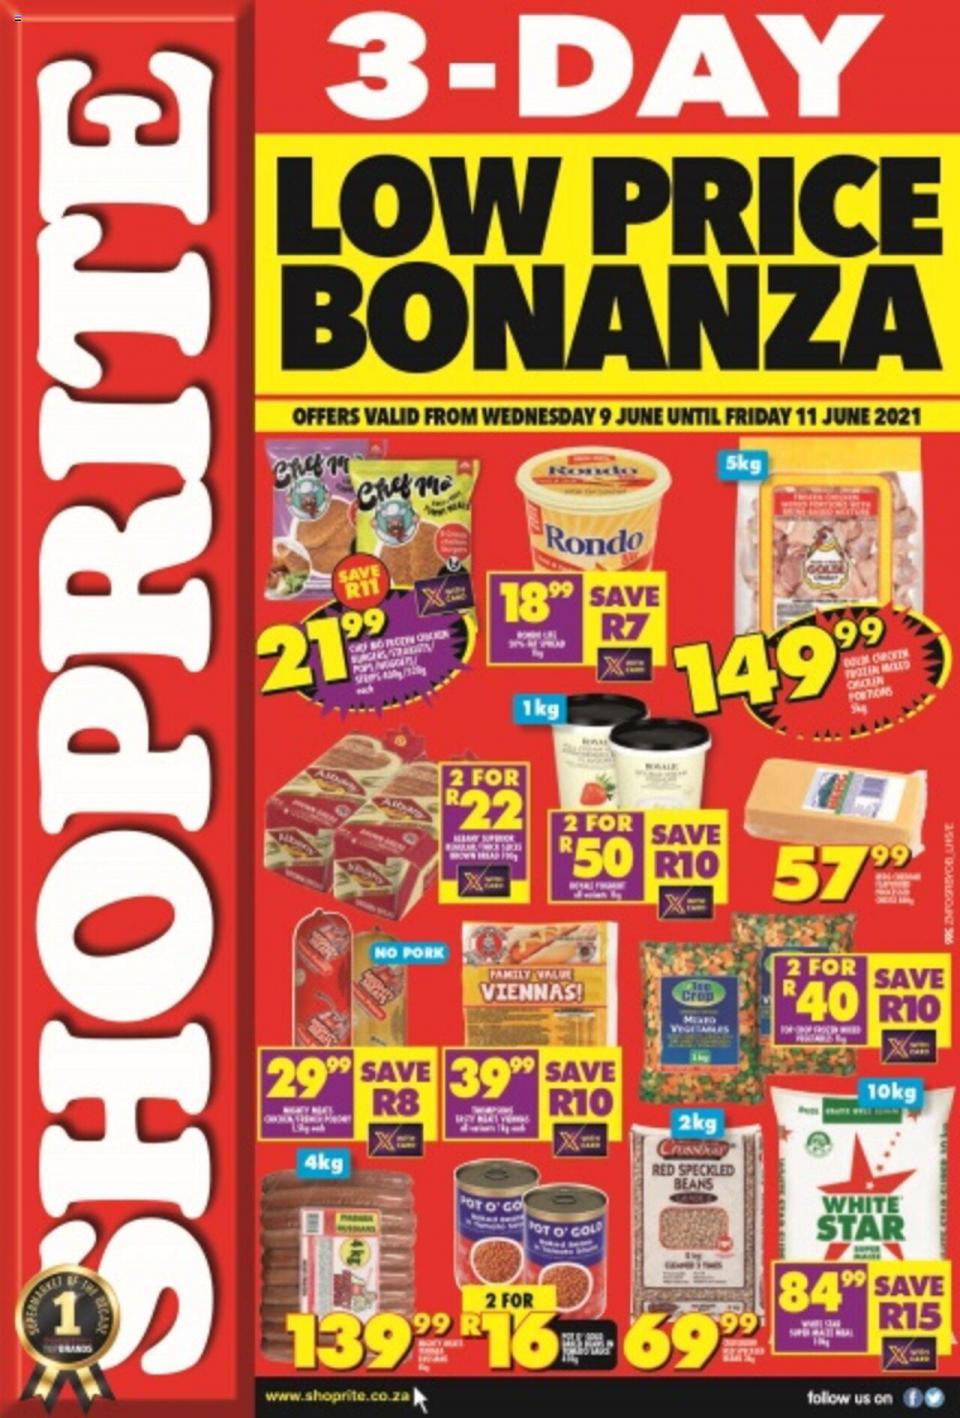 Shoprite Specials 3-Day Low Price Bonanza 9 – 11 June 2021